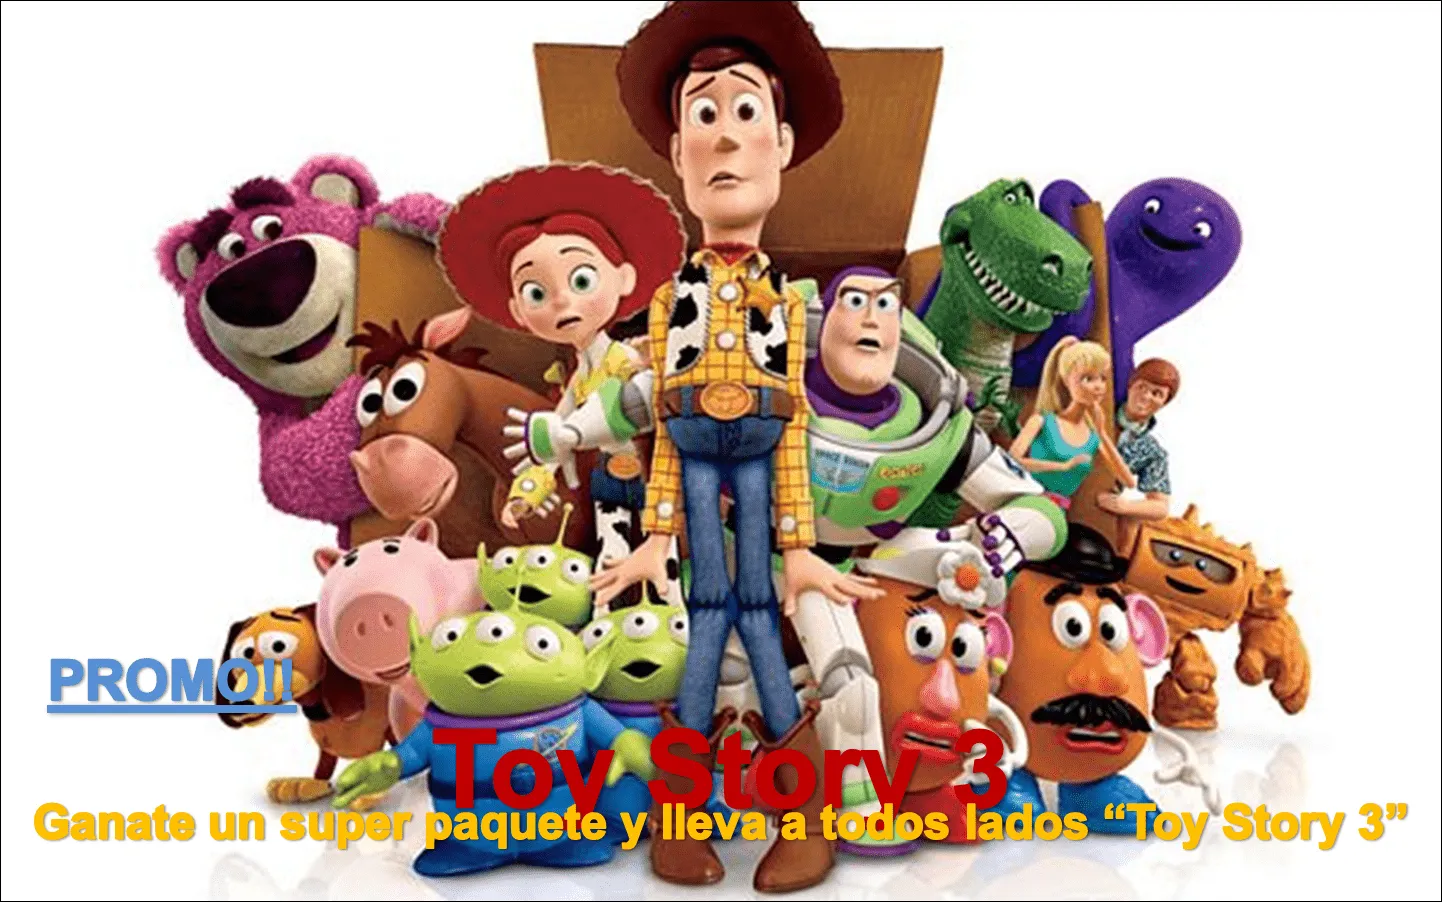 El Proyector: Promo: ¡Lleva a todos lados Toy Story 3!